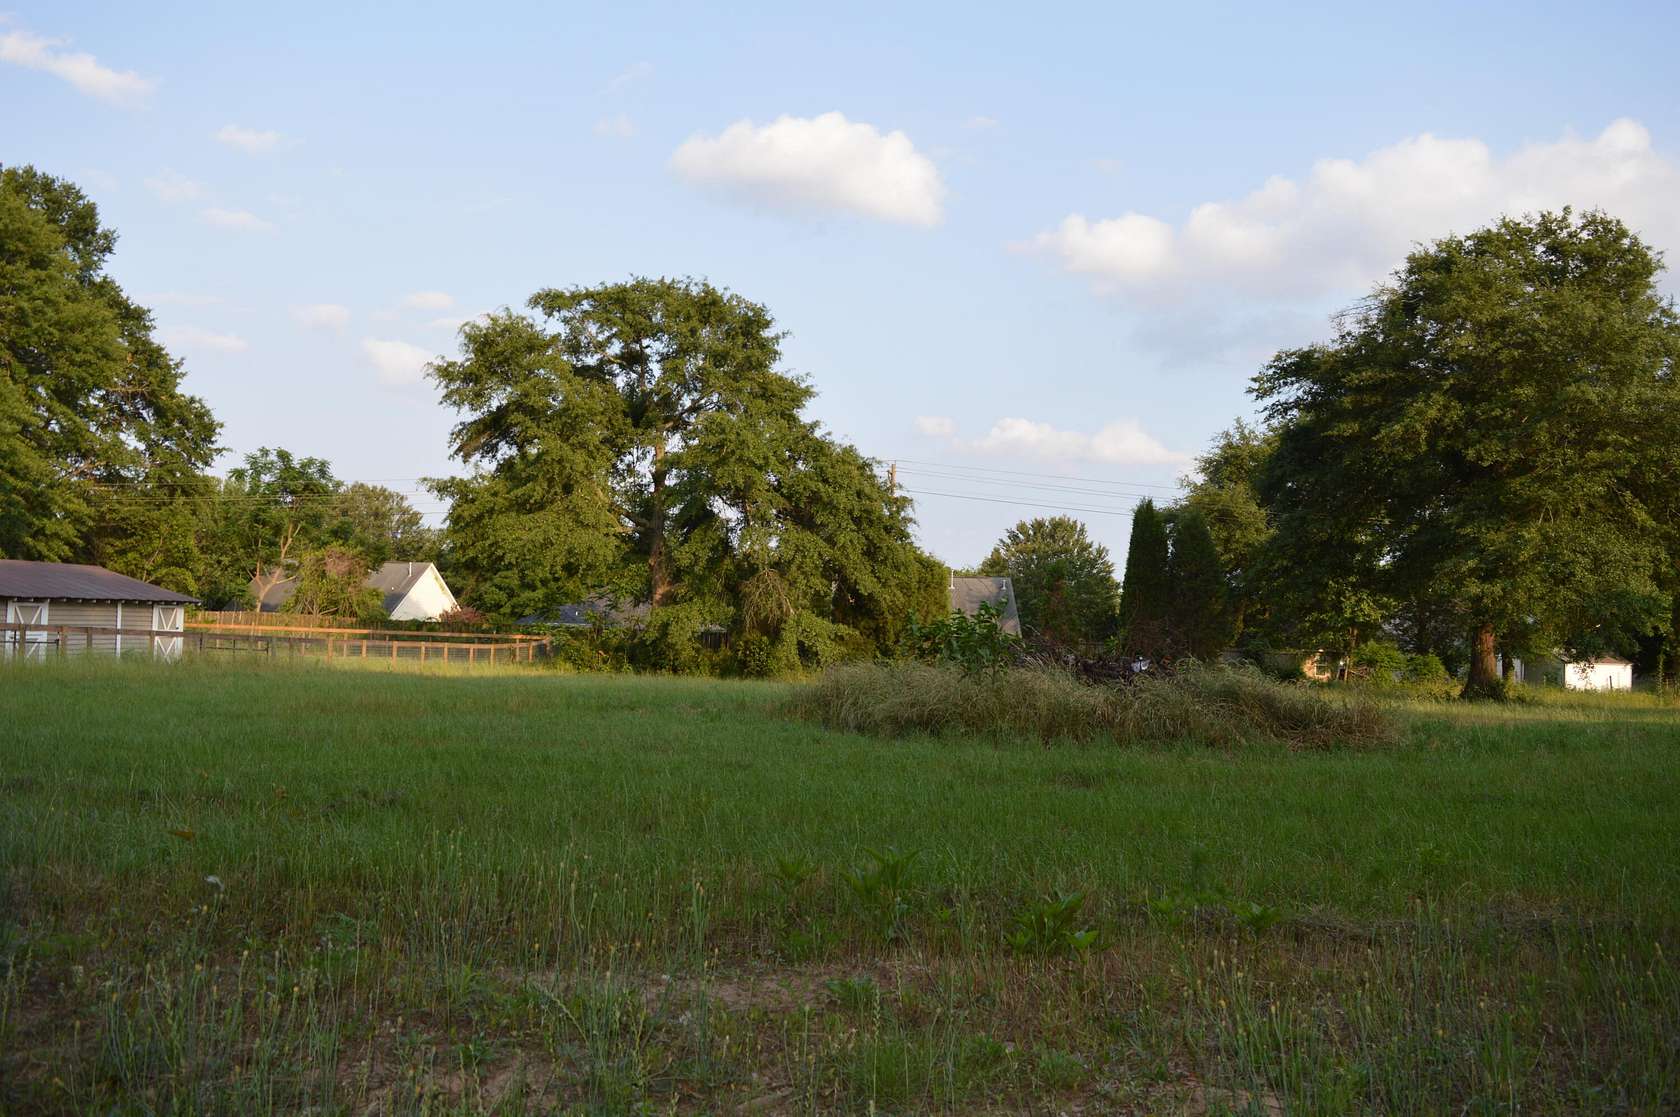 0.47 Acres of Land for Sale in Aiken, South Carolina